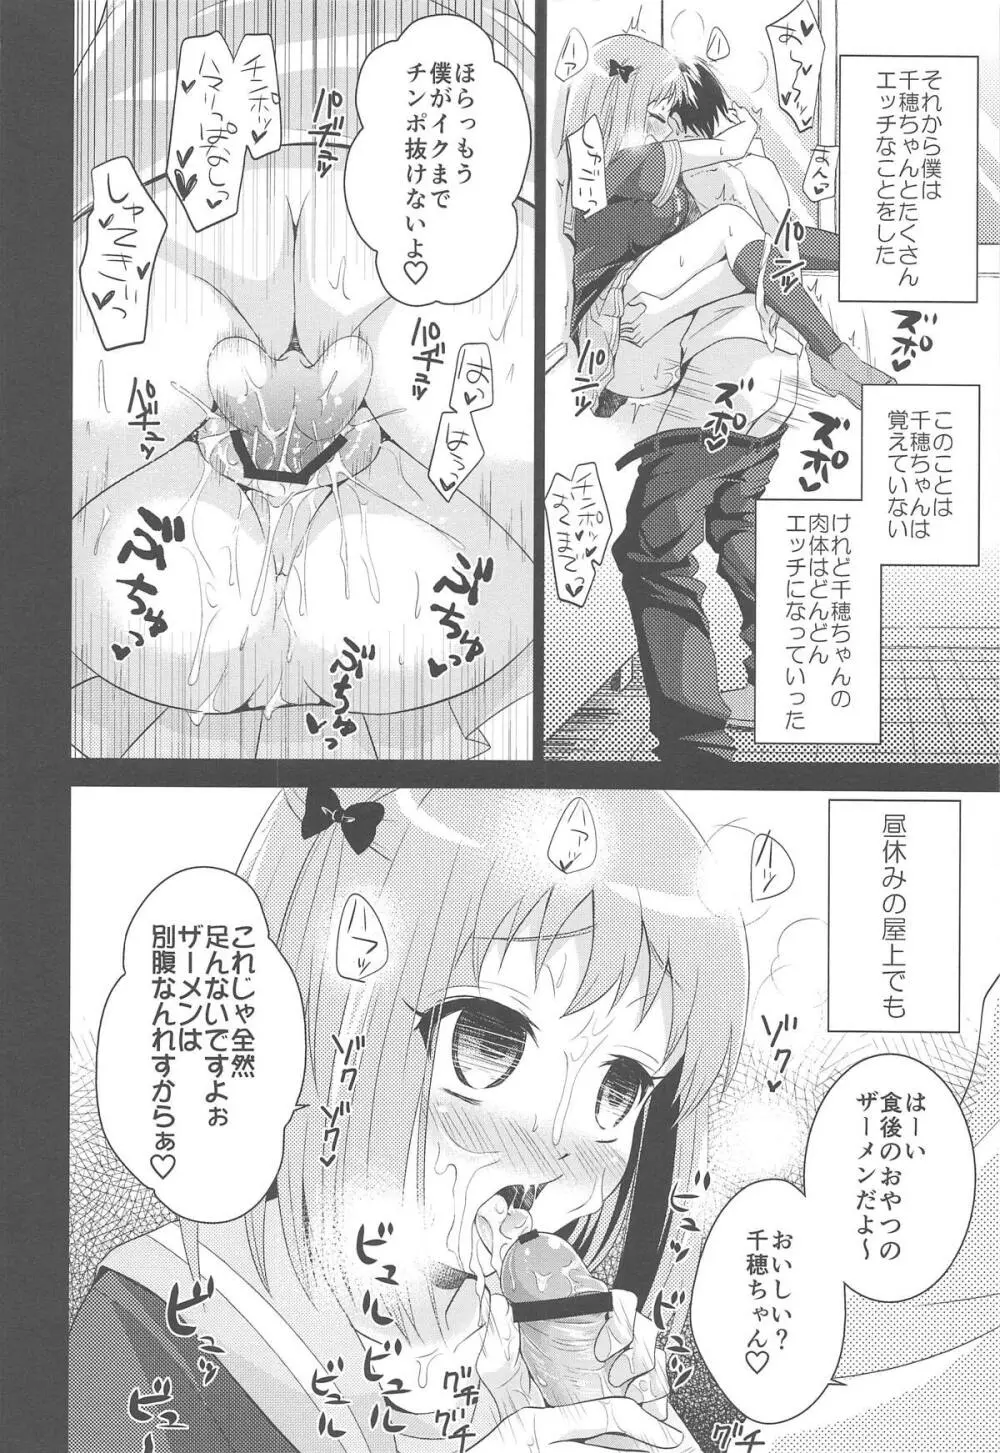 ちーちゃんであそぼう! - page8